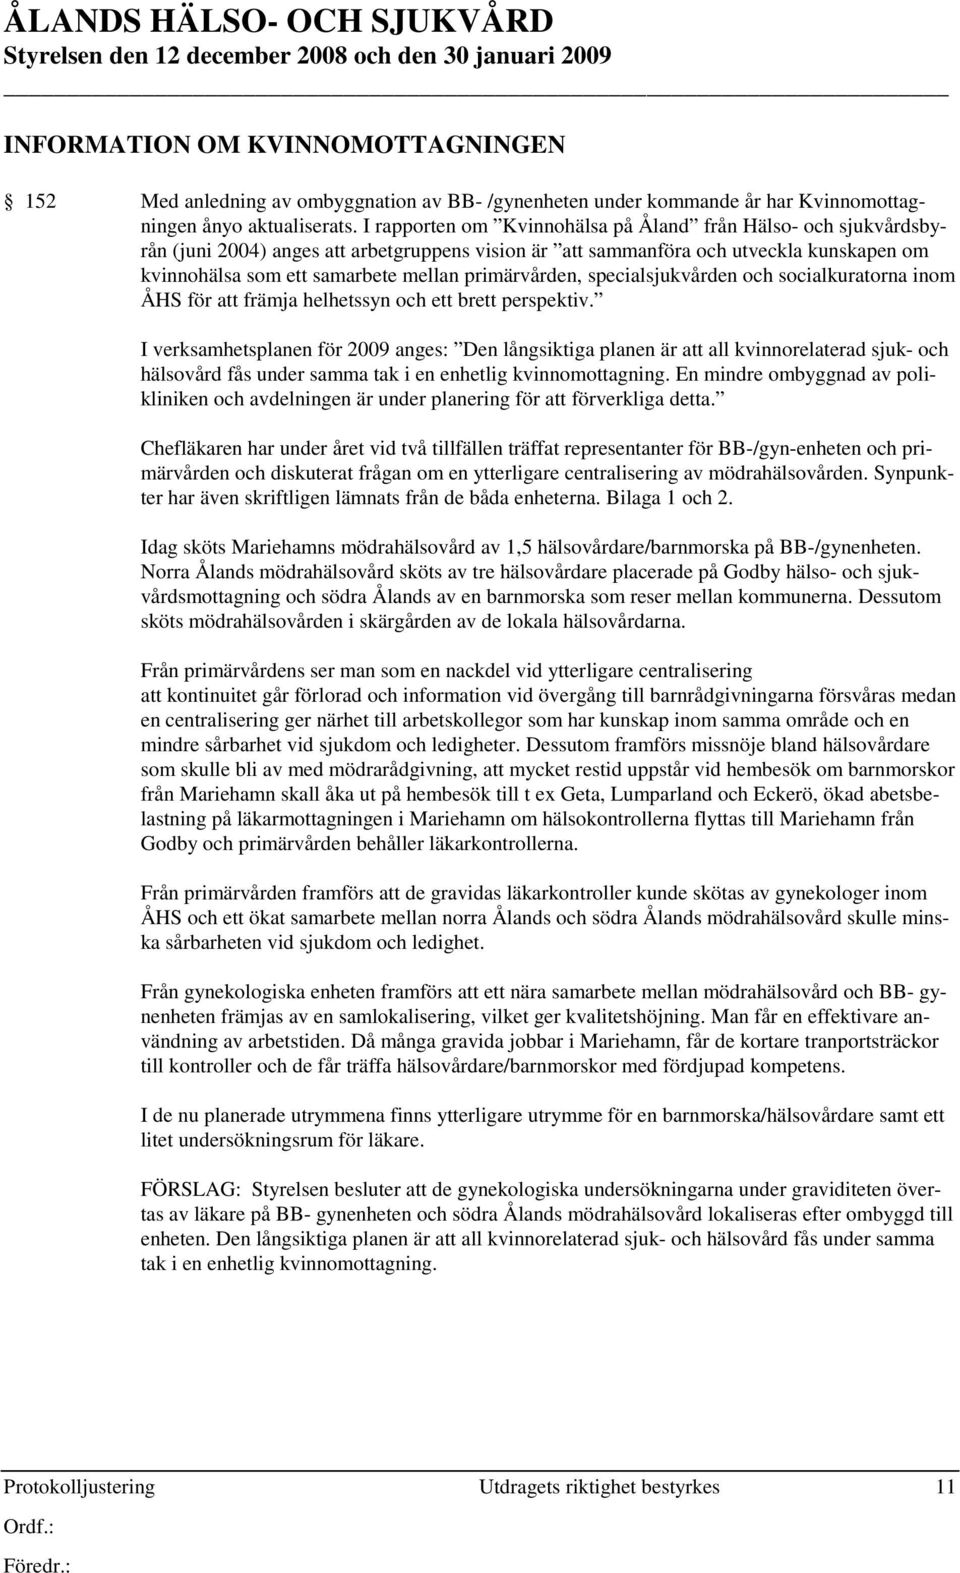 I rapporten om Kvinnohälsa på Åland från Hälso- och sjukvårdsbyrån (juni 2004) anges att arbetgruppens vision är att sammanföra och utveckla kunskapen om kvinnohälsa som ett samarbete mellan